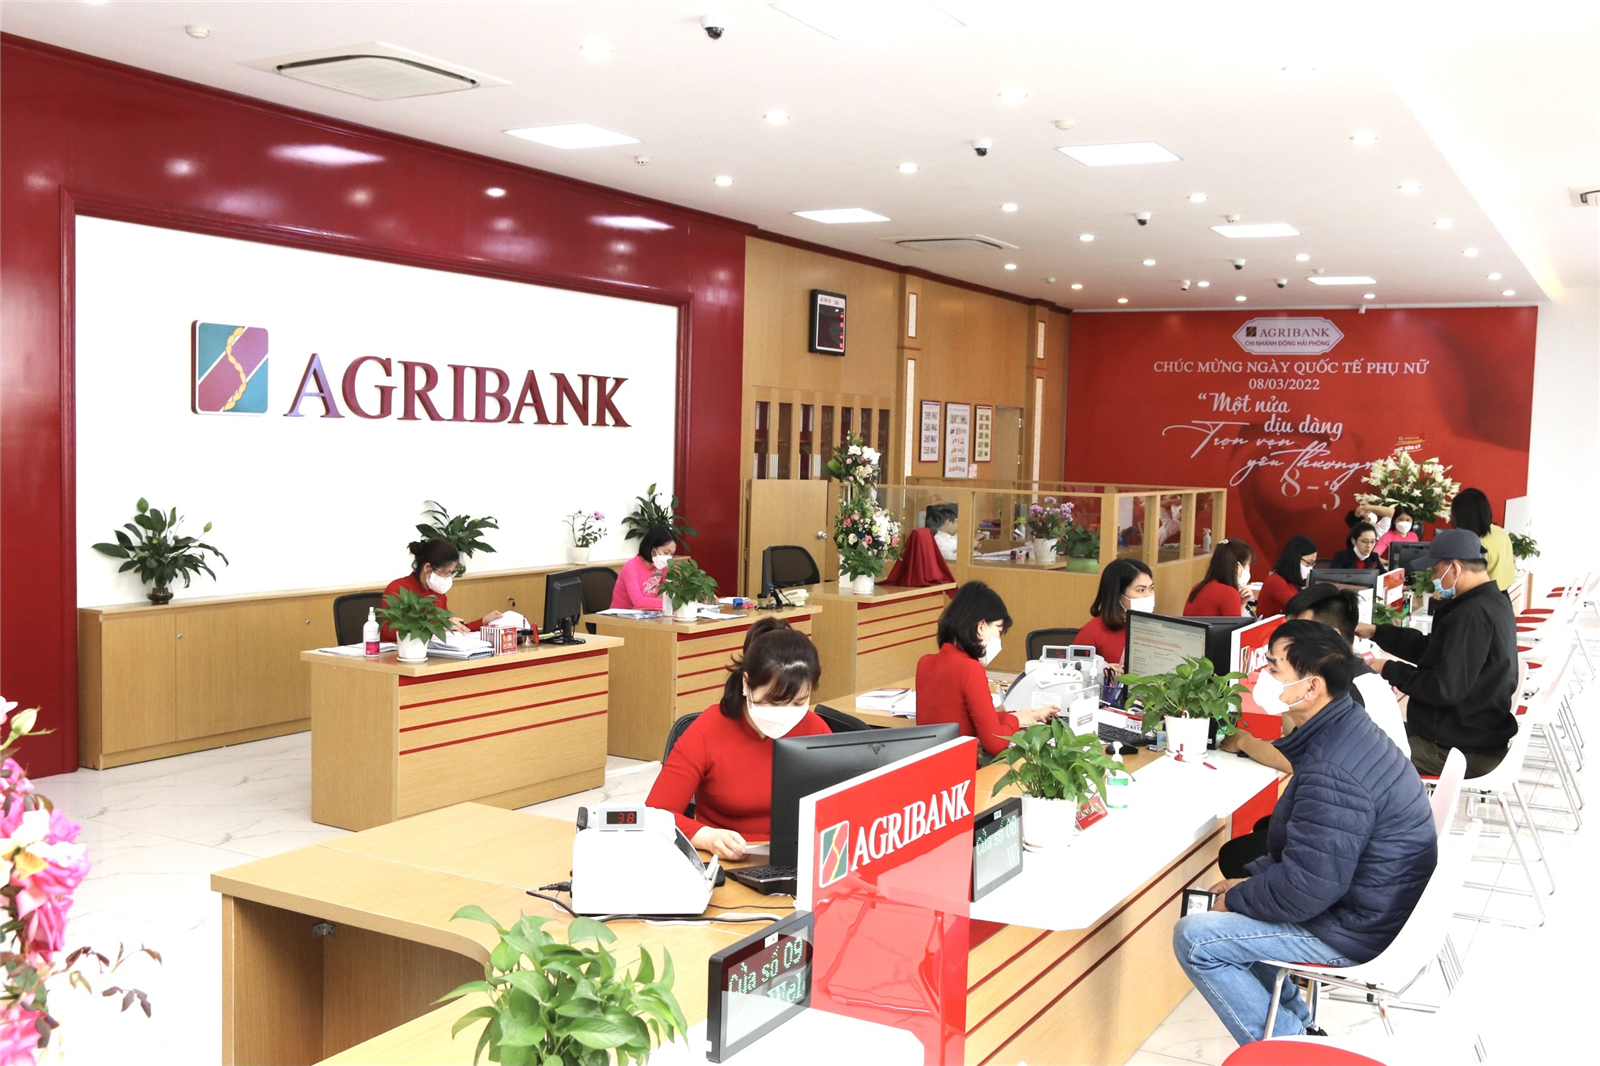 Phản ứng của Uỷ ban Kinh tế Quốc hội về đề xuất tăng vốn khủng cho Agribank - Ảnh 2.